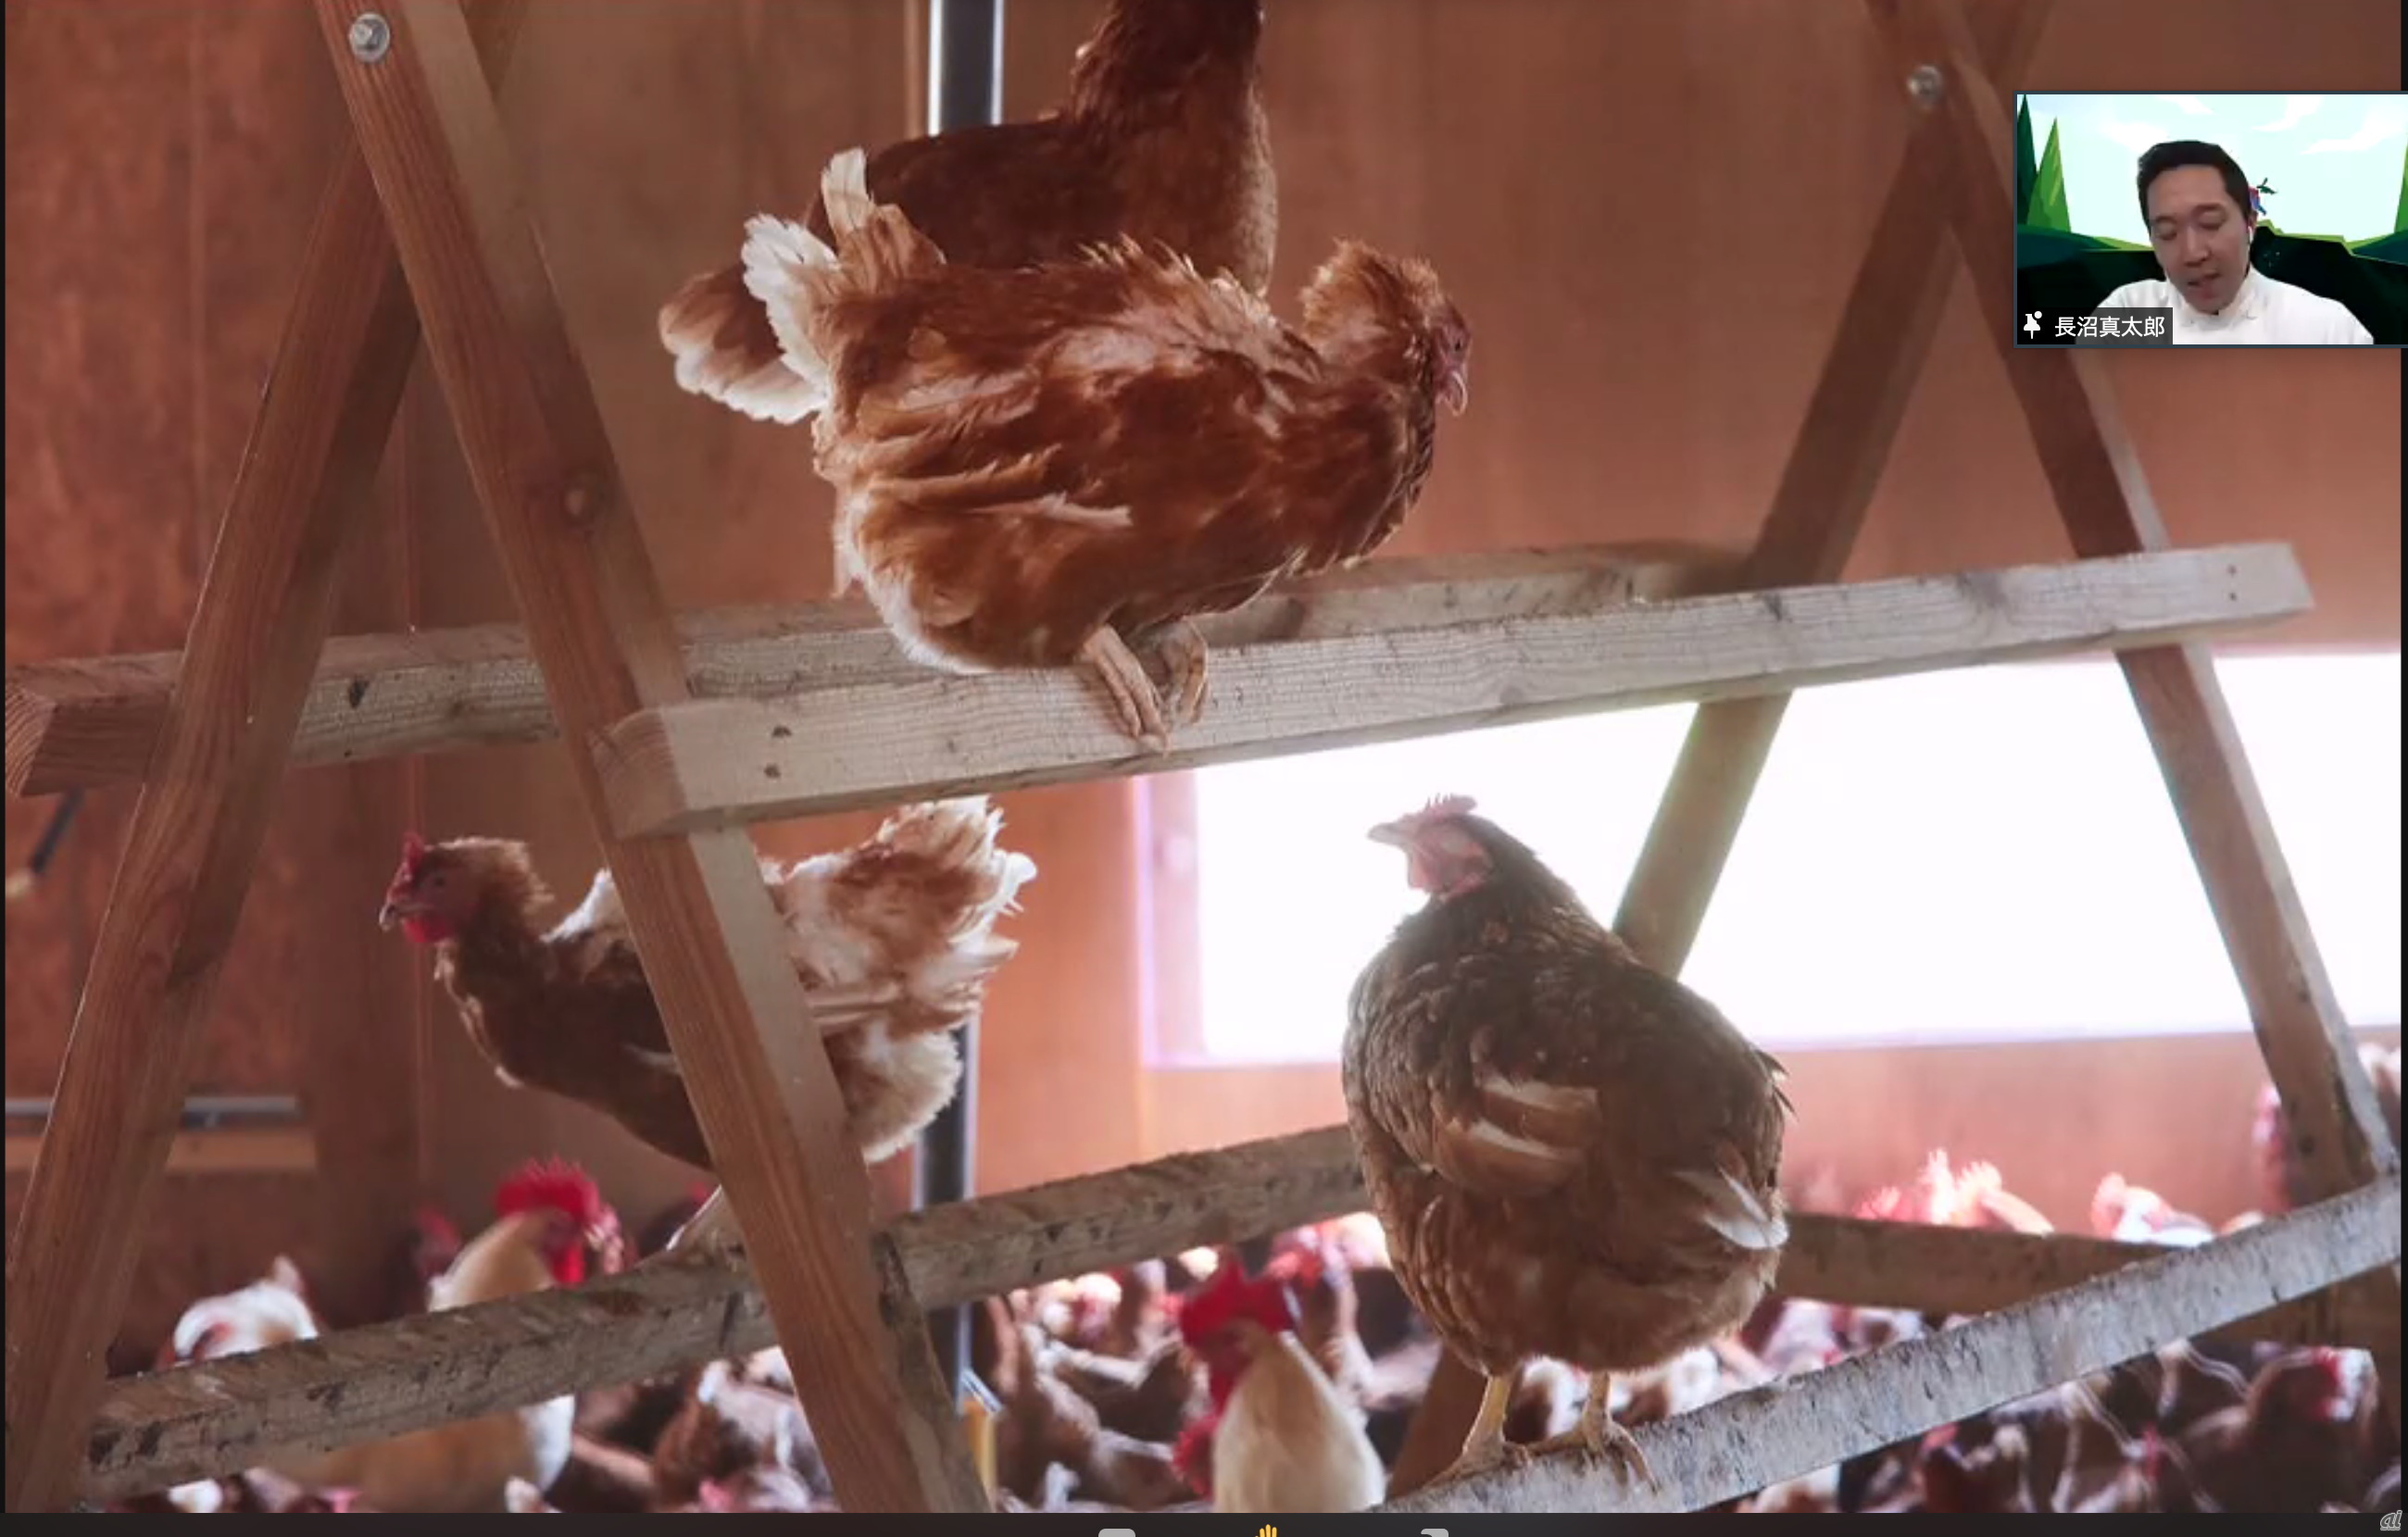 鳥インフルエンザを考慮し、平飼い方式を採用した自社養鶏場の卵を使用